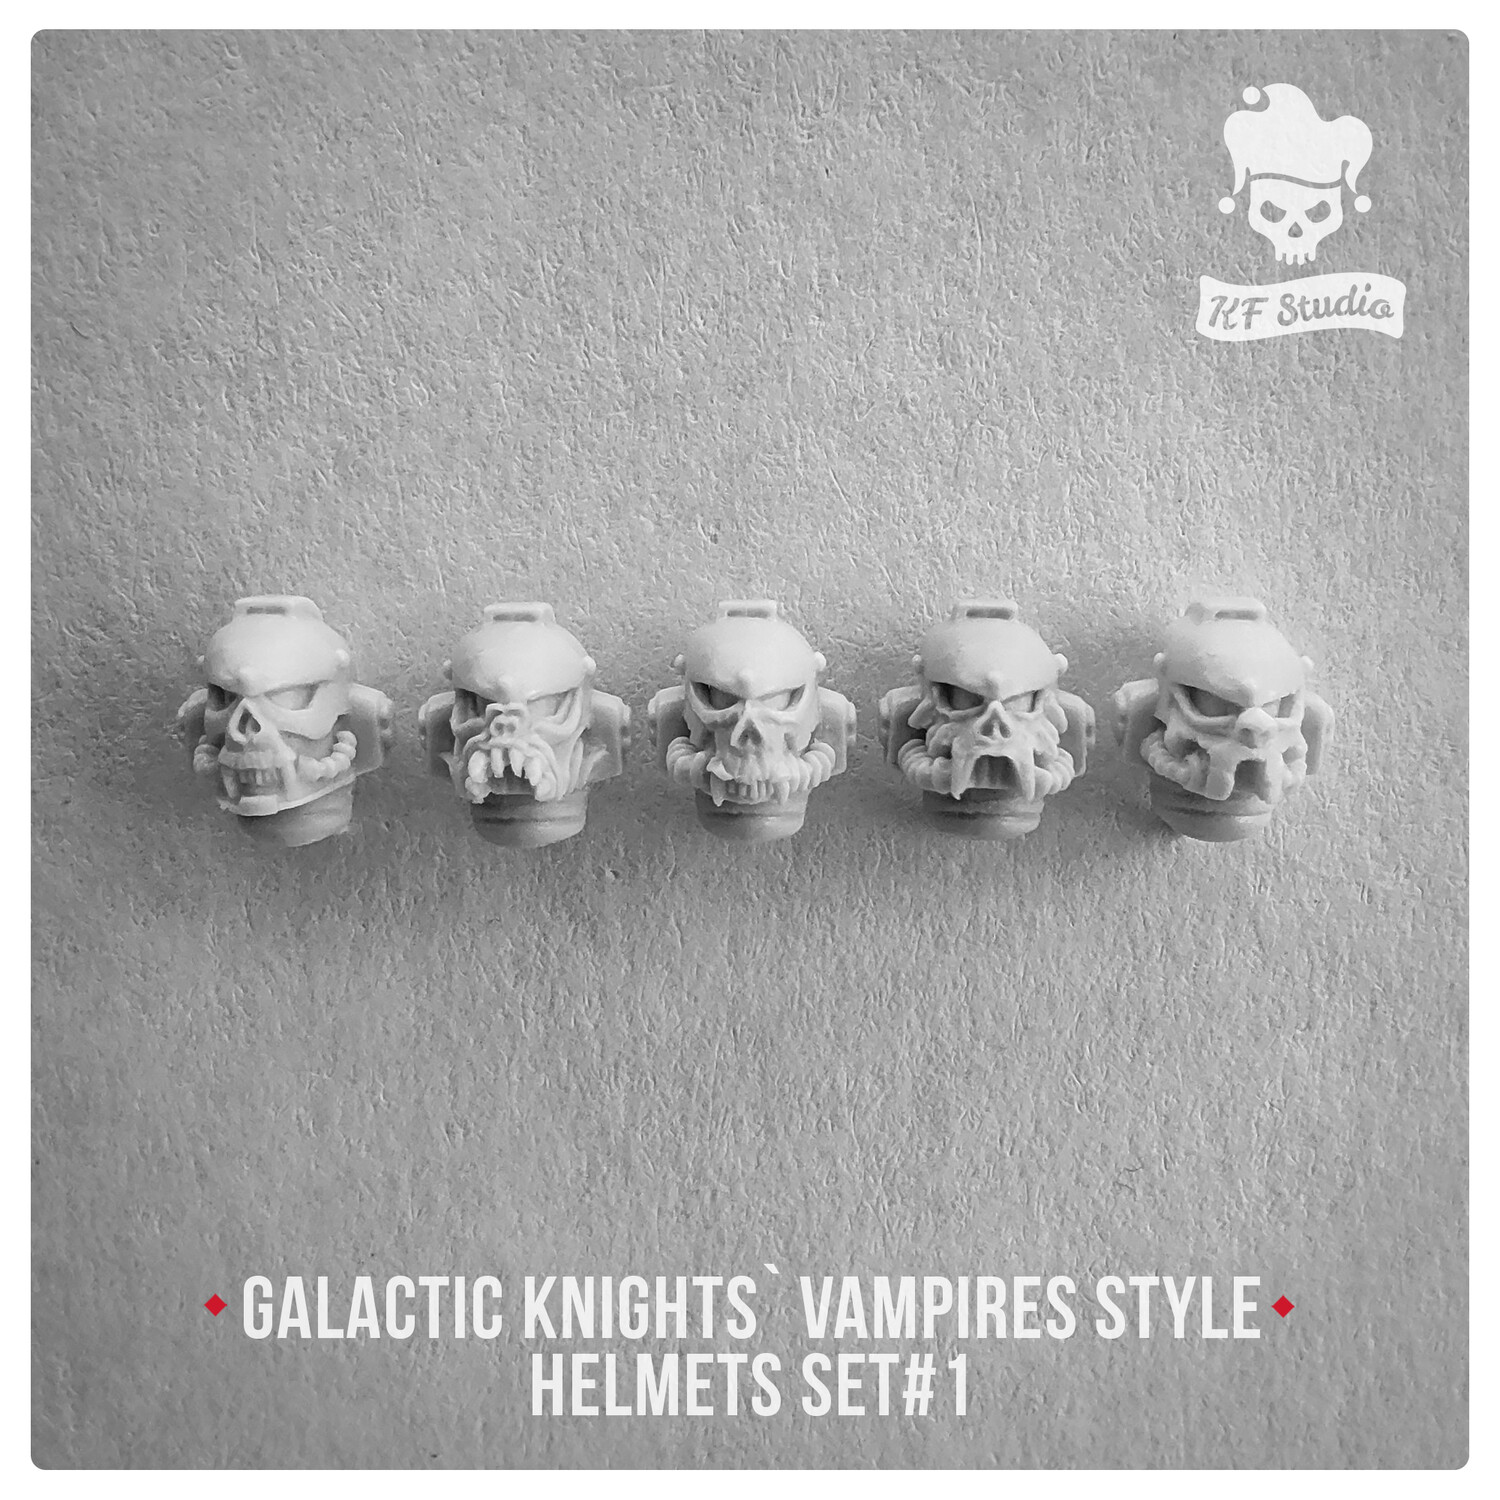 Galactic Knights Vampire Style Helmets Set#1 by KFStudio